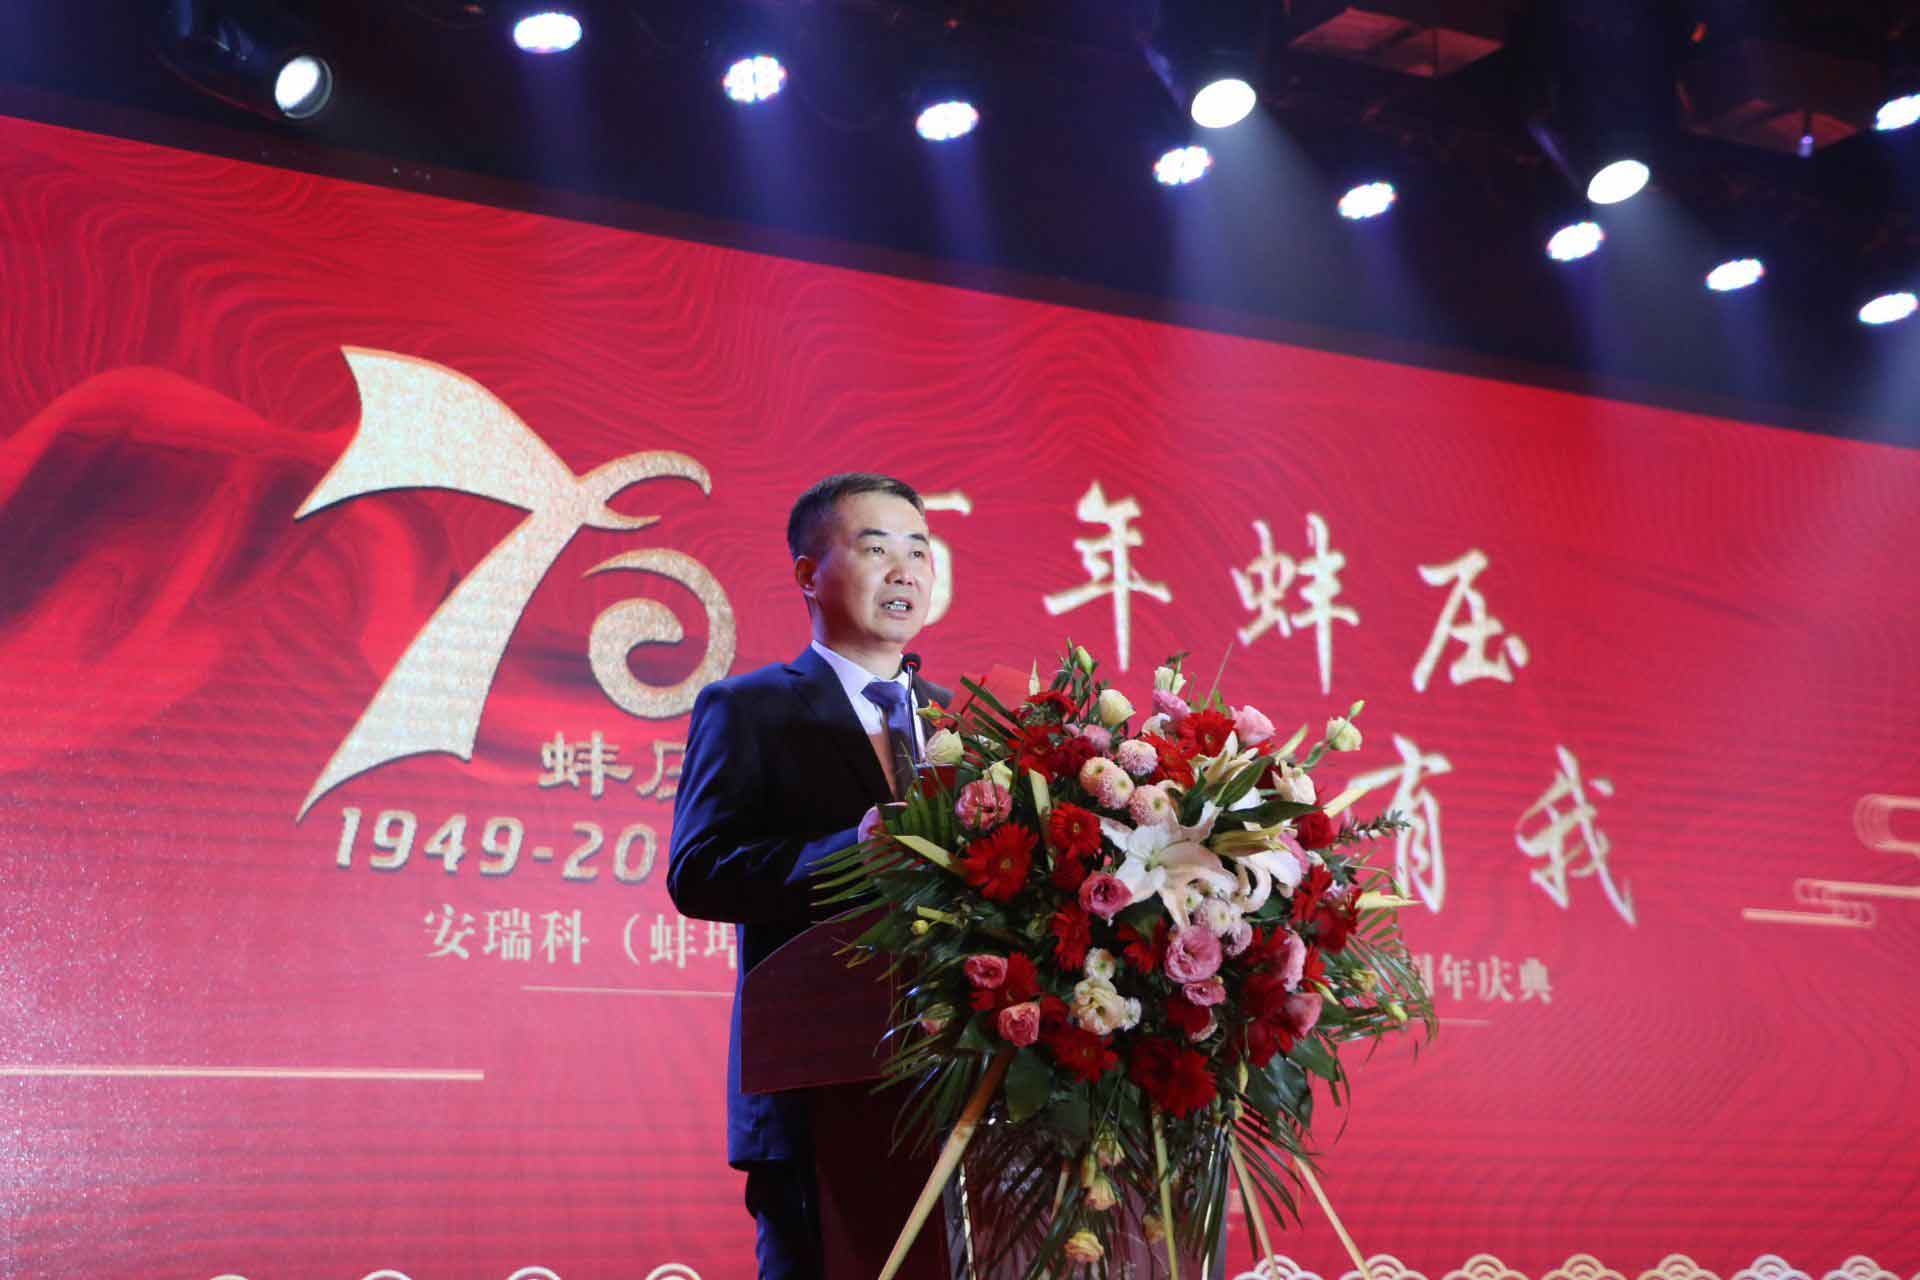 安瑞科（蚌埠）压缩机有限公司创业发展七十周年庆典隆重举行